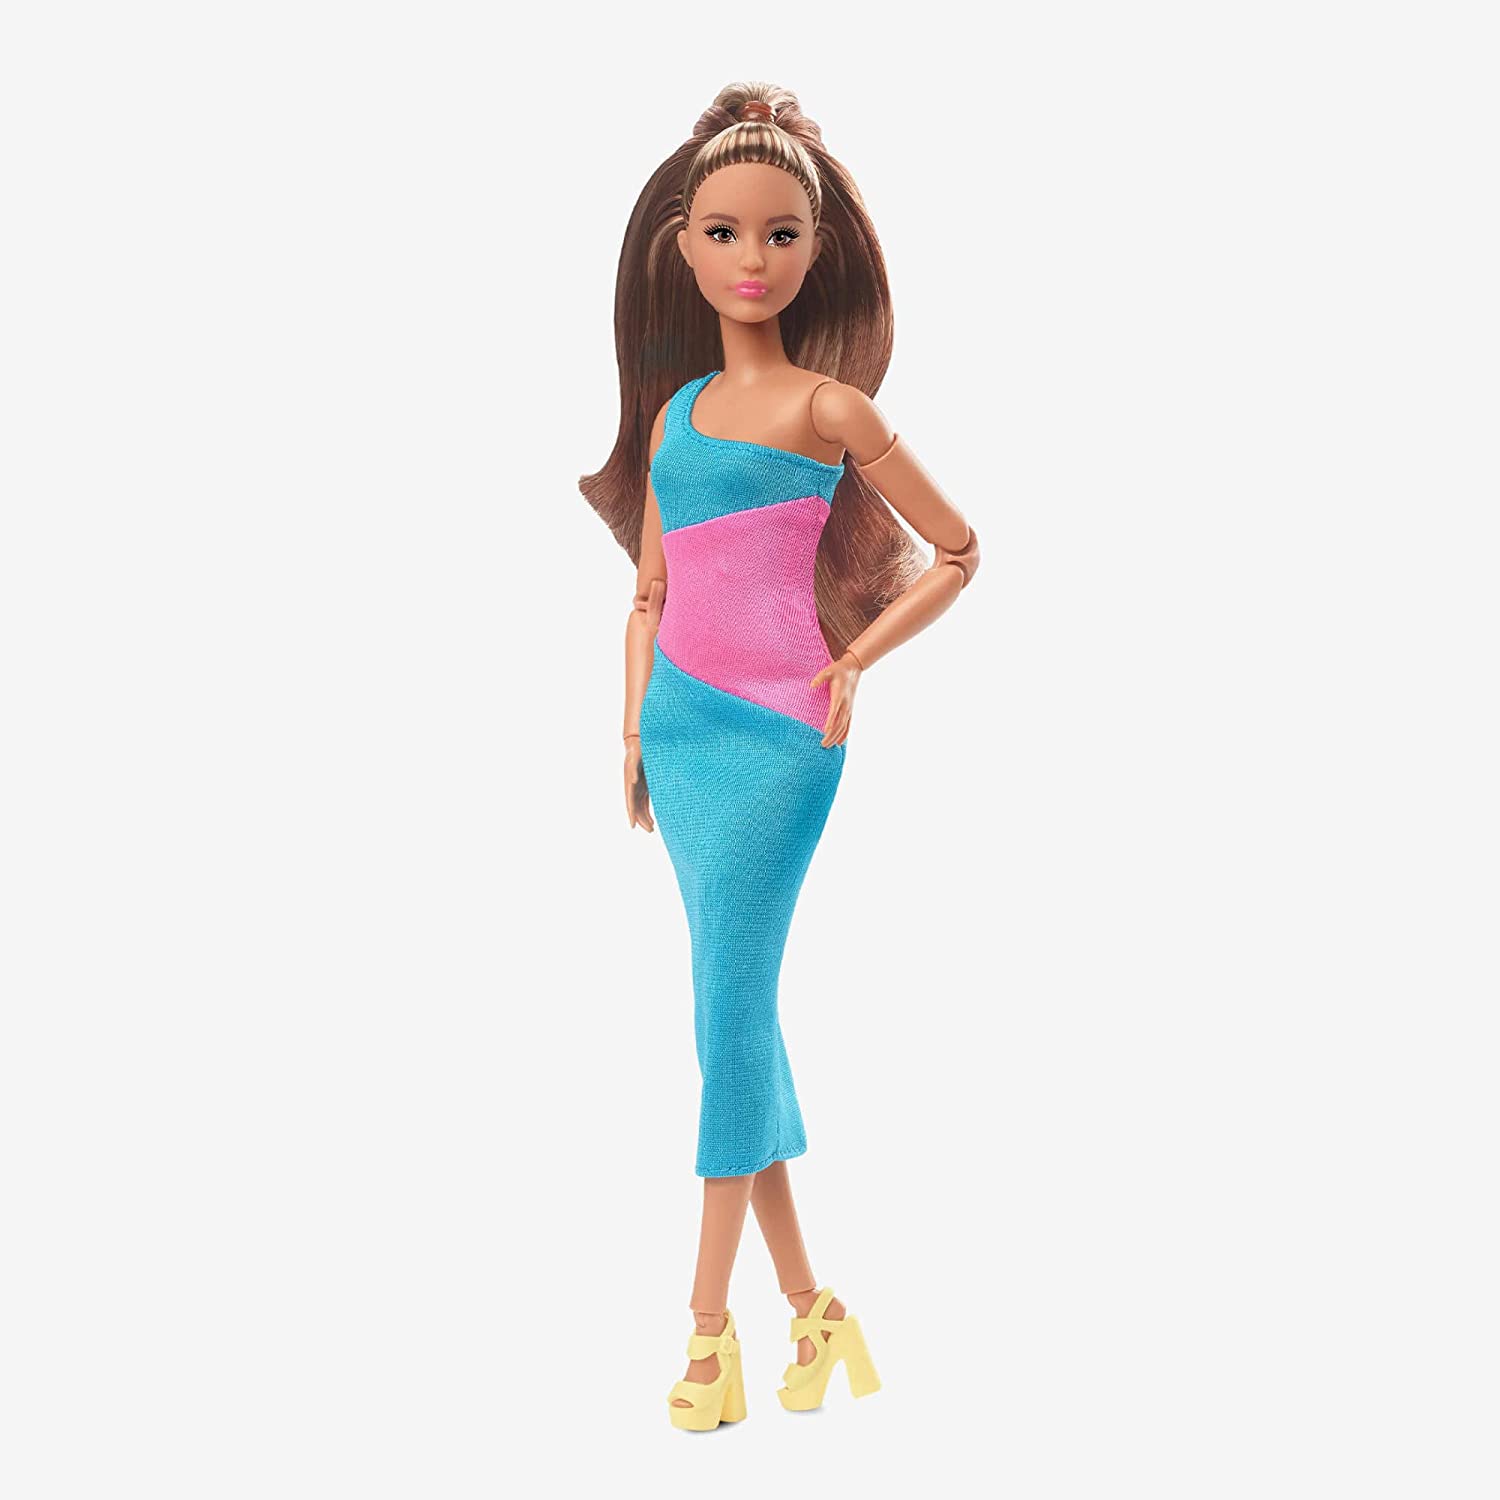 Barbie Signature Looks Muñeca Rubia de Colección +6 años